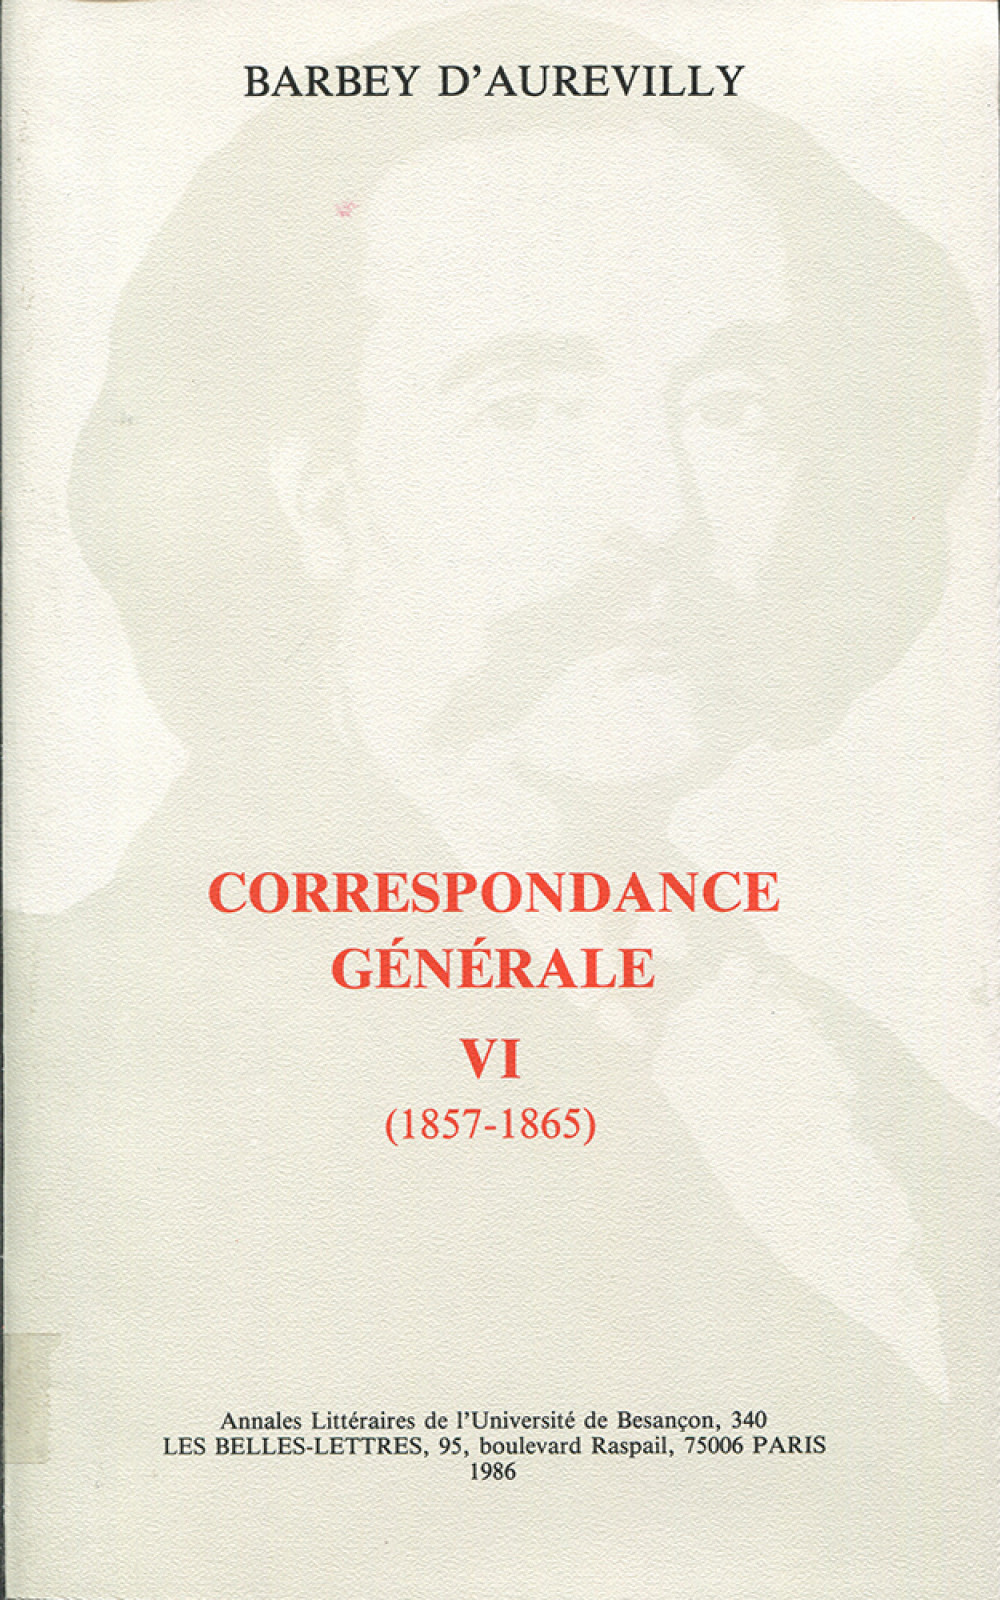 Barbey d'Aurevilly. Correspondance générale VI (1857-1865)